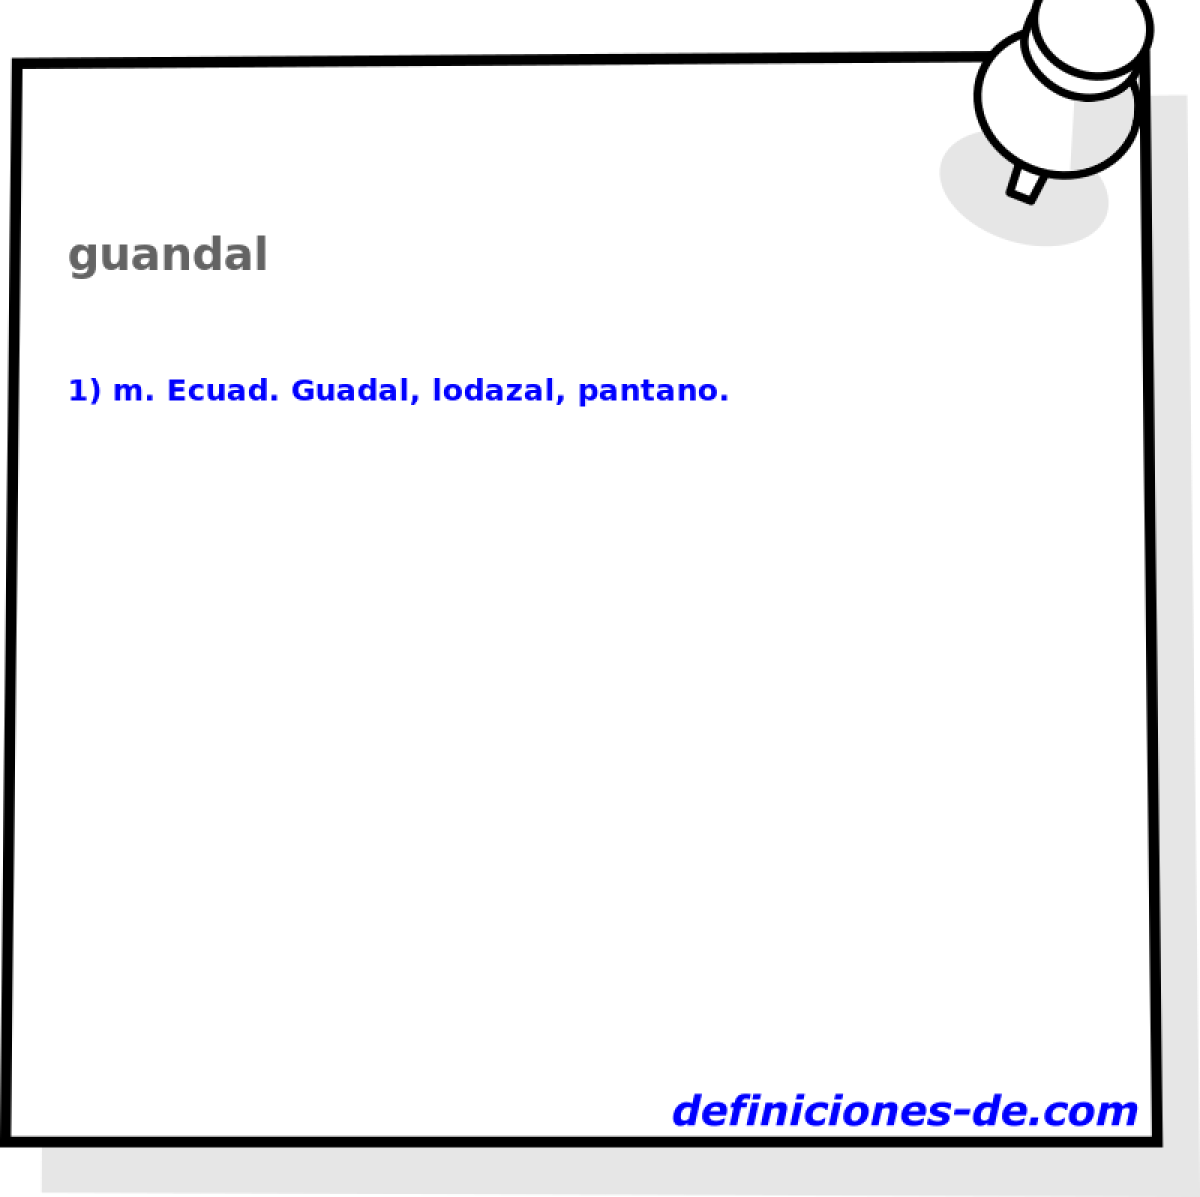 guandal 